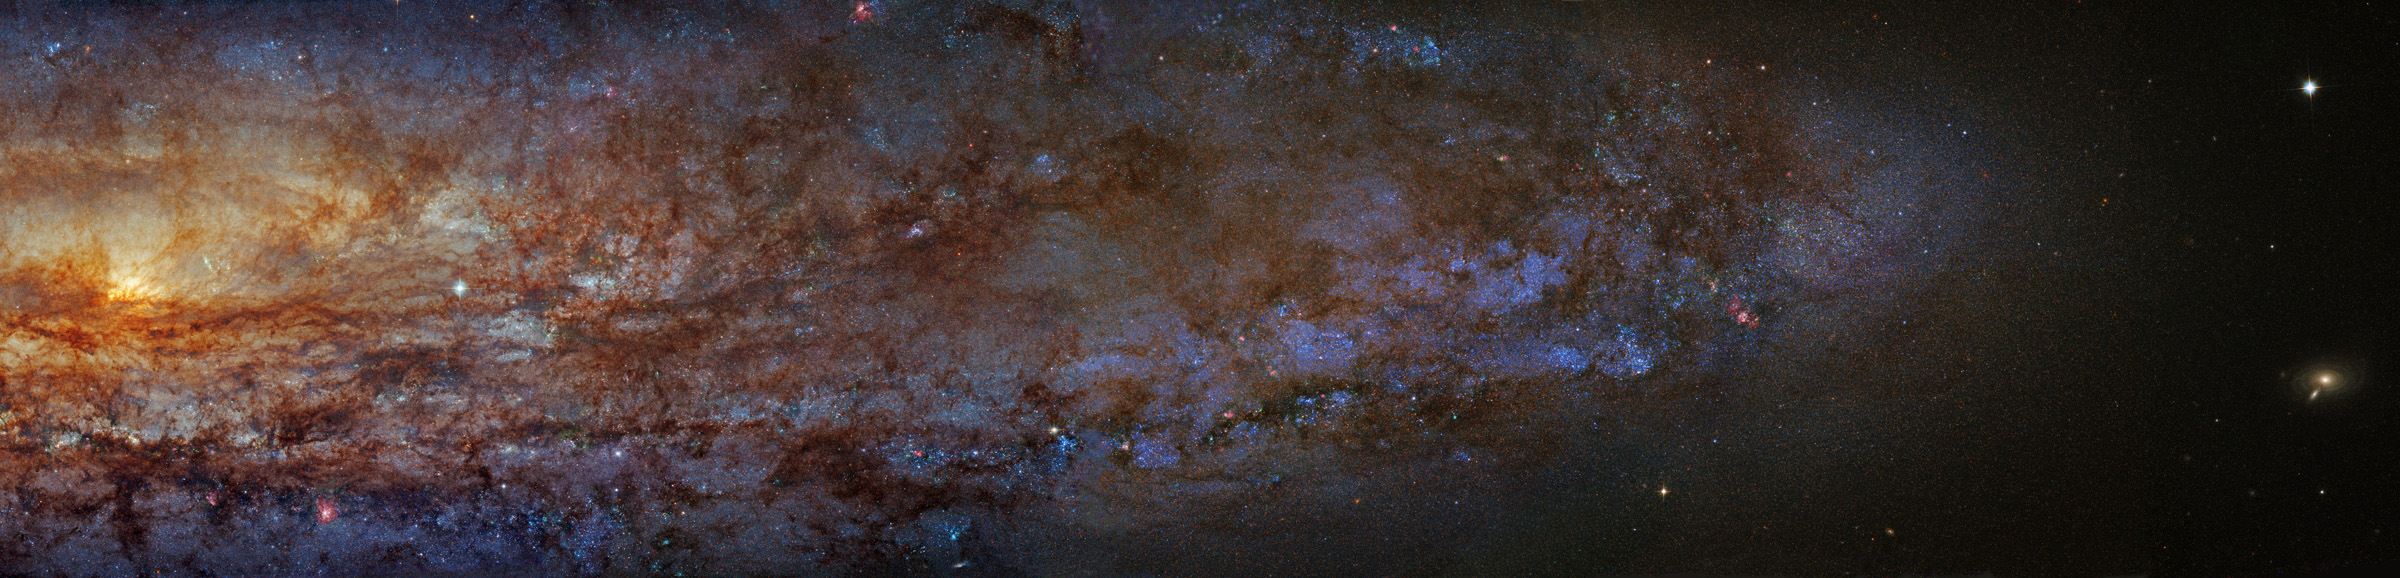 Die rechte Hälfte der Galaxie NGC 253 verläuft vom Galaxienkern links bis zu den Ausläufern rechts, sie besitzt sehr markante Staubbahnen. Ganz rechts ist ein kleines Galaxienpaar im Hintergrund.